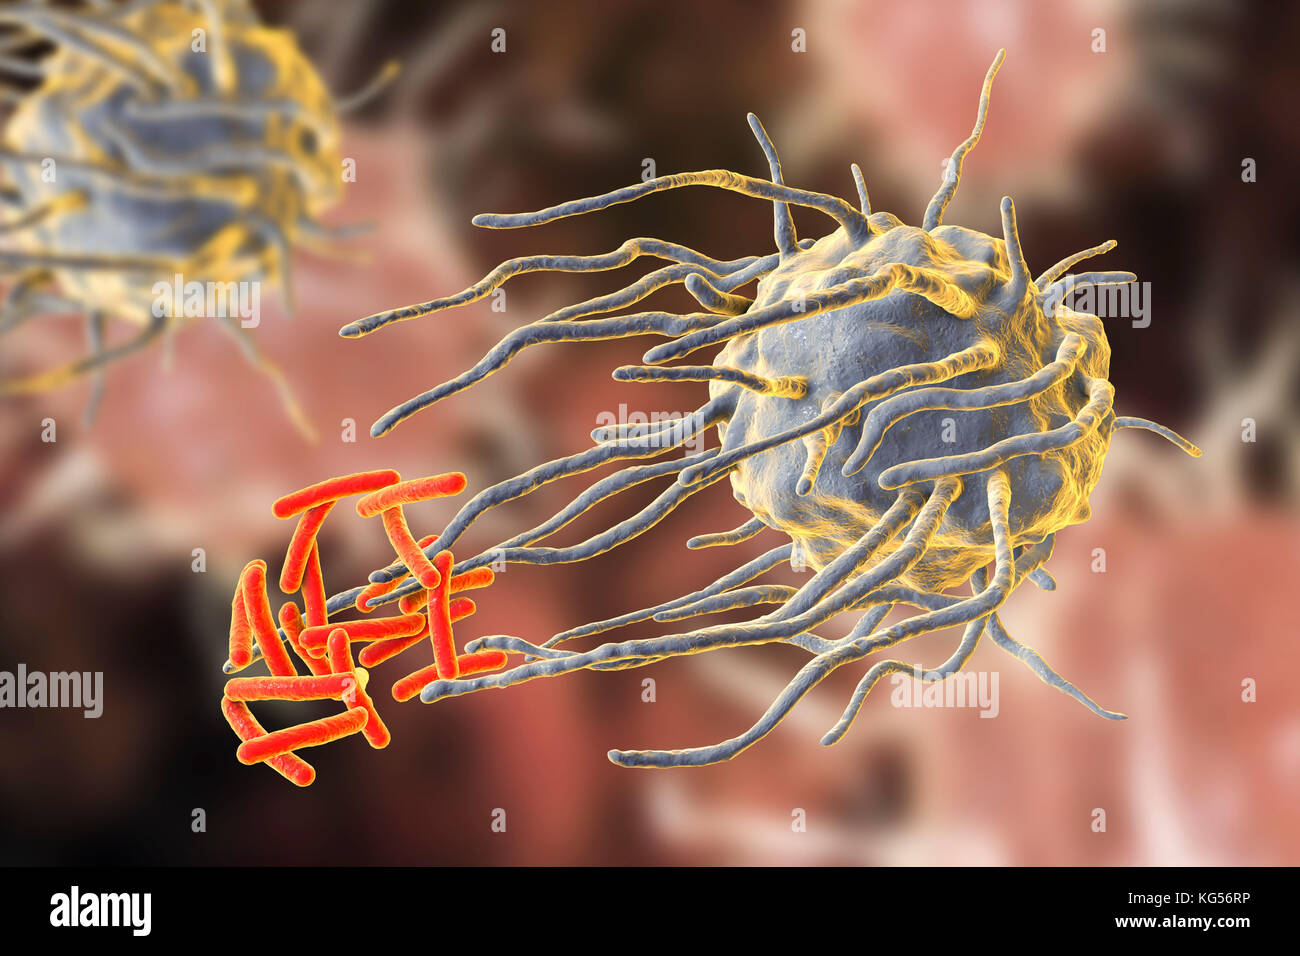 Makrophage engulfing TB-Bakterien. Computer Abbildung: der Makrophagen weißen Blutkörperchen (blau) engulfing Tuberkulose (Mycobacterium tuberculosis) Bakterien (orange). Dieser Prozess wird als phagozytose. Makrophagen sind Zellen des Immunsystems des Körpers. Sie phagocytose und zerstören Krankheitserreger, tote Zellen und zelluläre Ablagerungen. Stockfoto